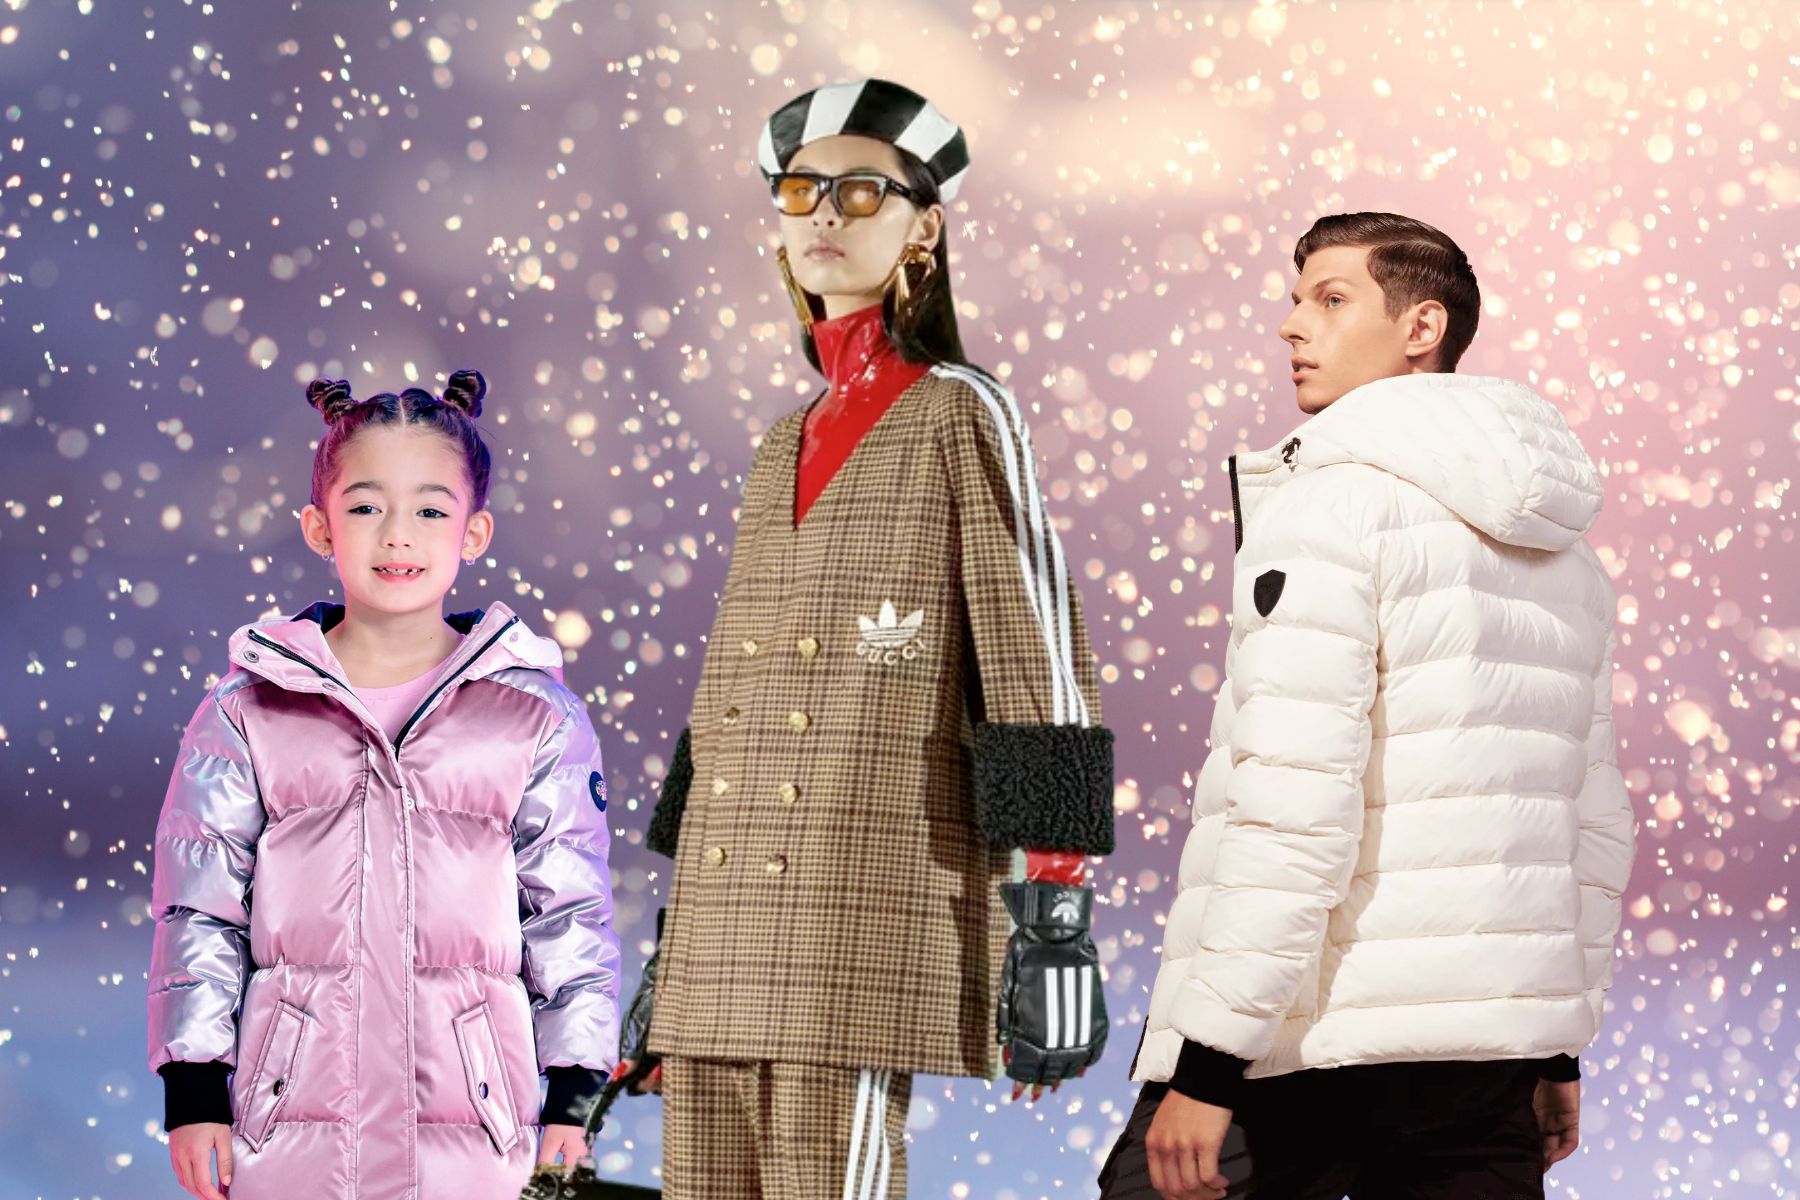 HiSO  Canadian Luxury Winter Coats & Jackets